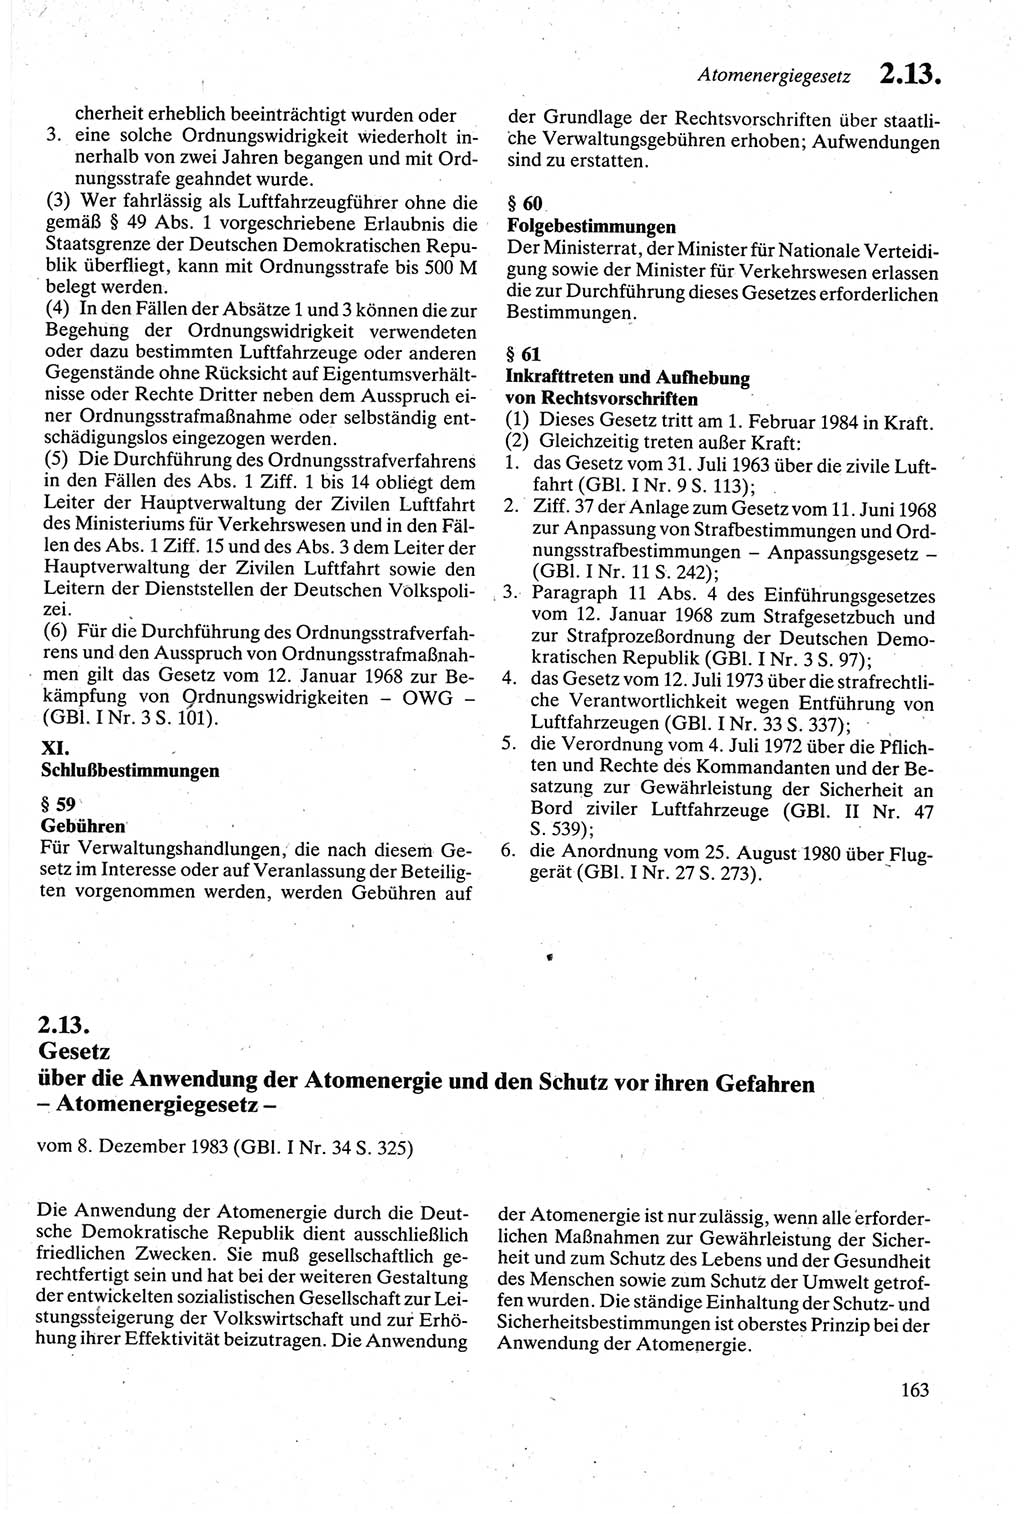 Strafgesetzbuch (StGB) der Deutschen Demokratischen Republik (DDR) sowie angrenzende Gesetze und Bestimmungen 1979, Seite 163 (StGB DDR Ges. Best. 1979, S. 163)